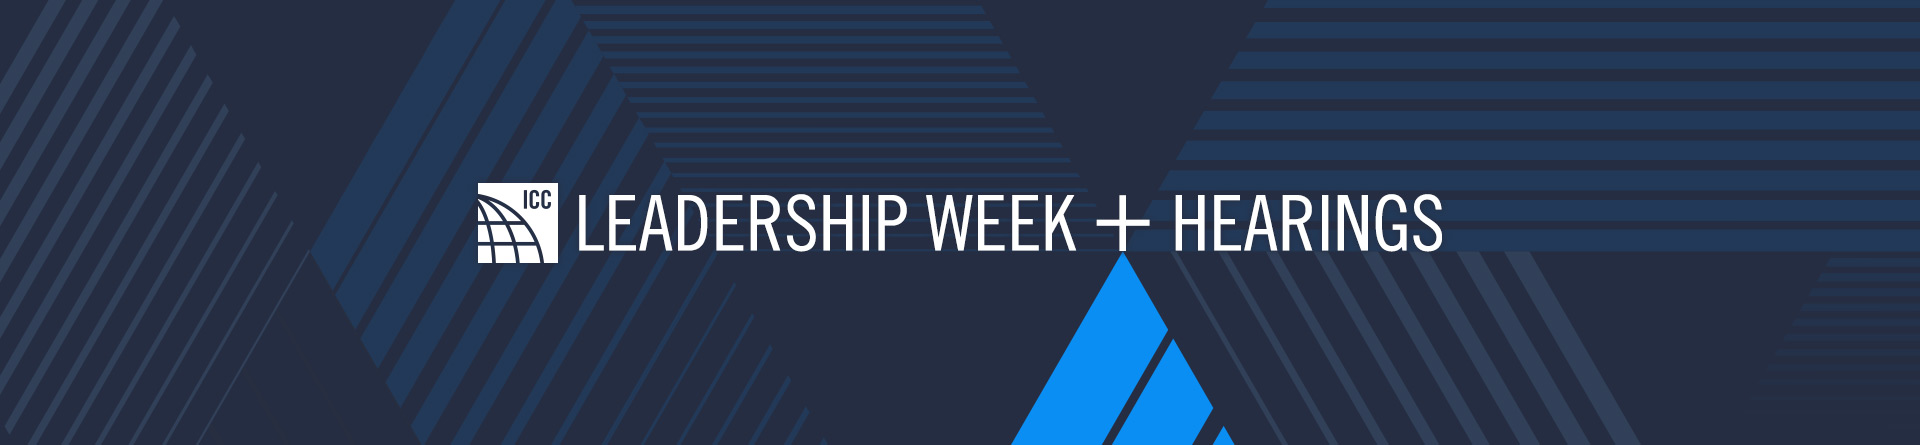 Leadership Week + Hearings Webcast